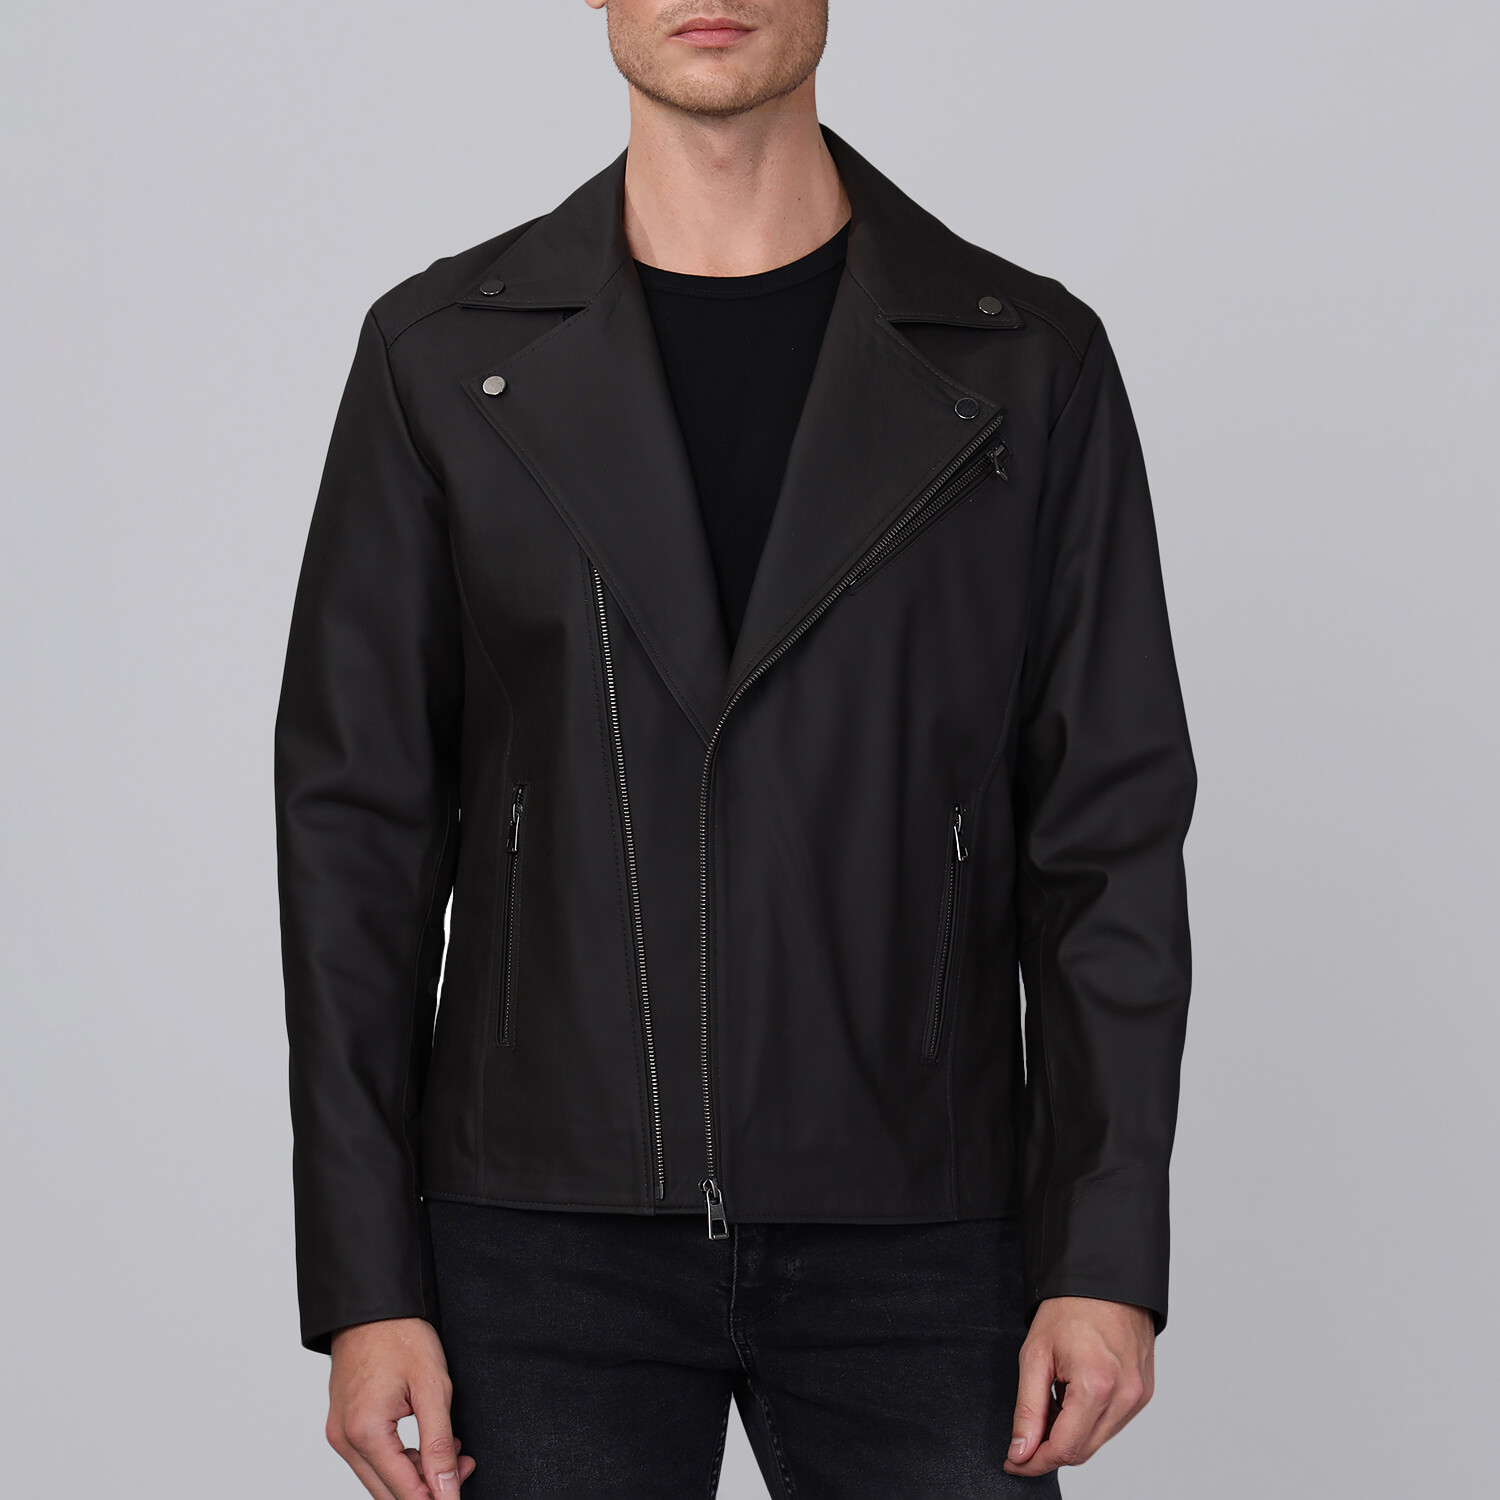 Biker Leather Jacket // Black Matte (S) - Basics&More Leather Jackets ...